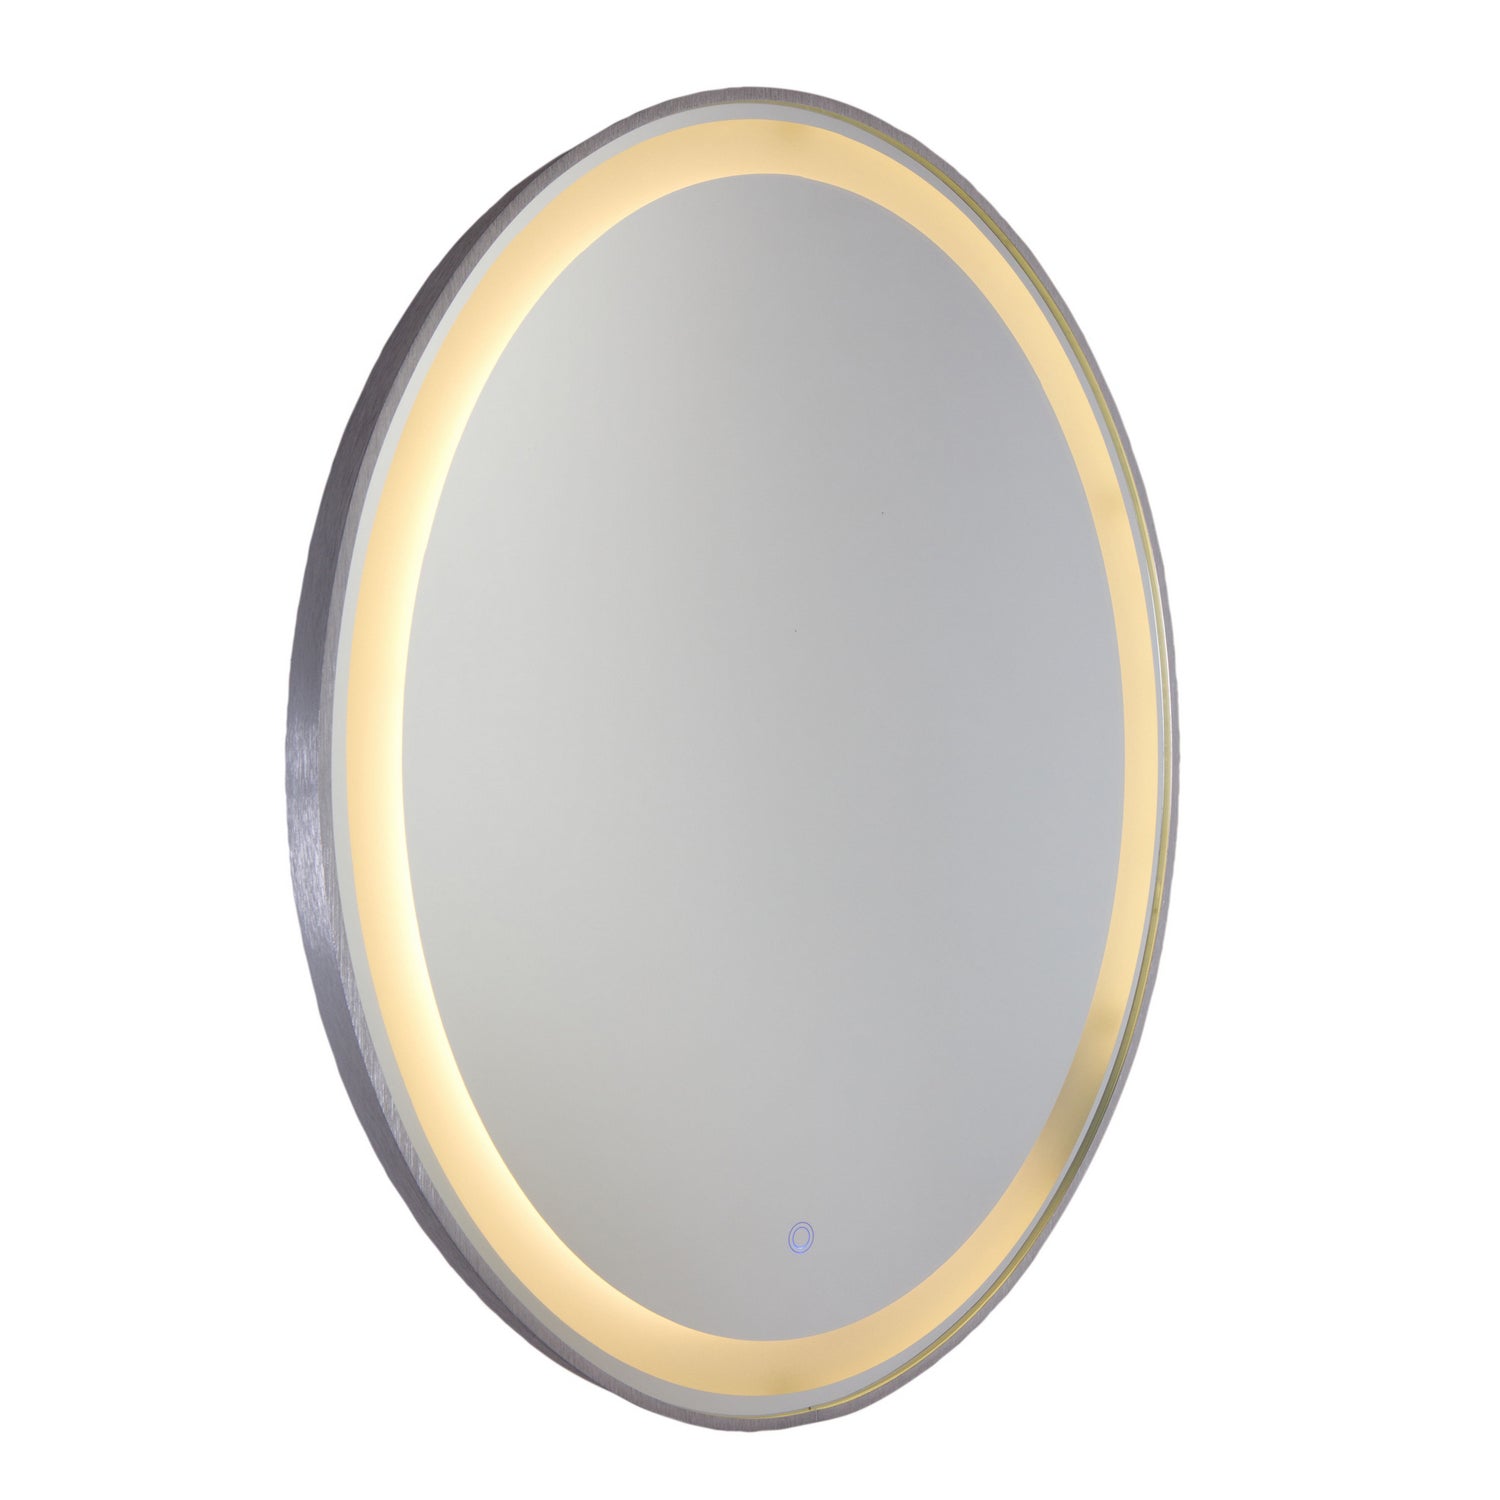 Artcraft Canada - LED Mirror - Reflections - Brushed Aluminum- Union Lighting Luminaires Decor